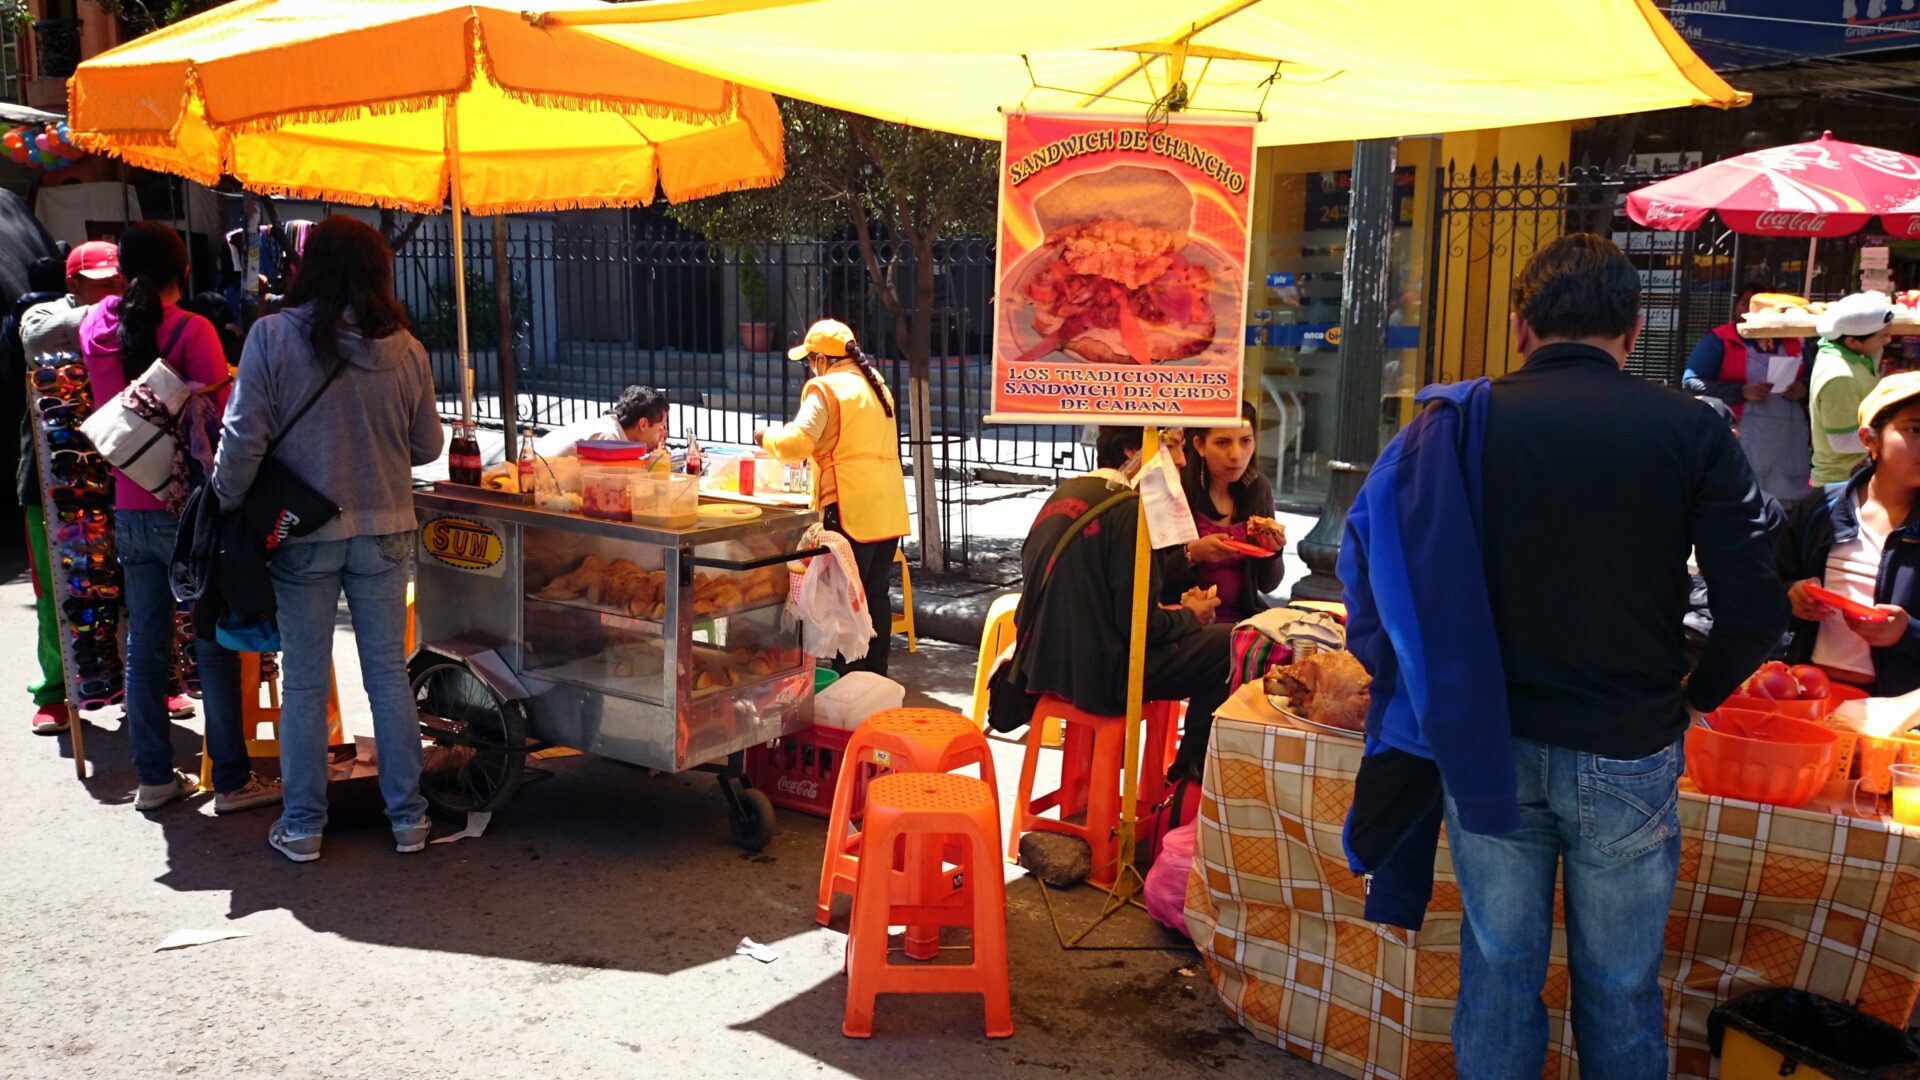 Bolivian Street Food